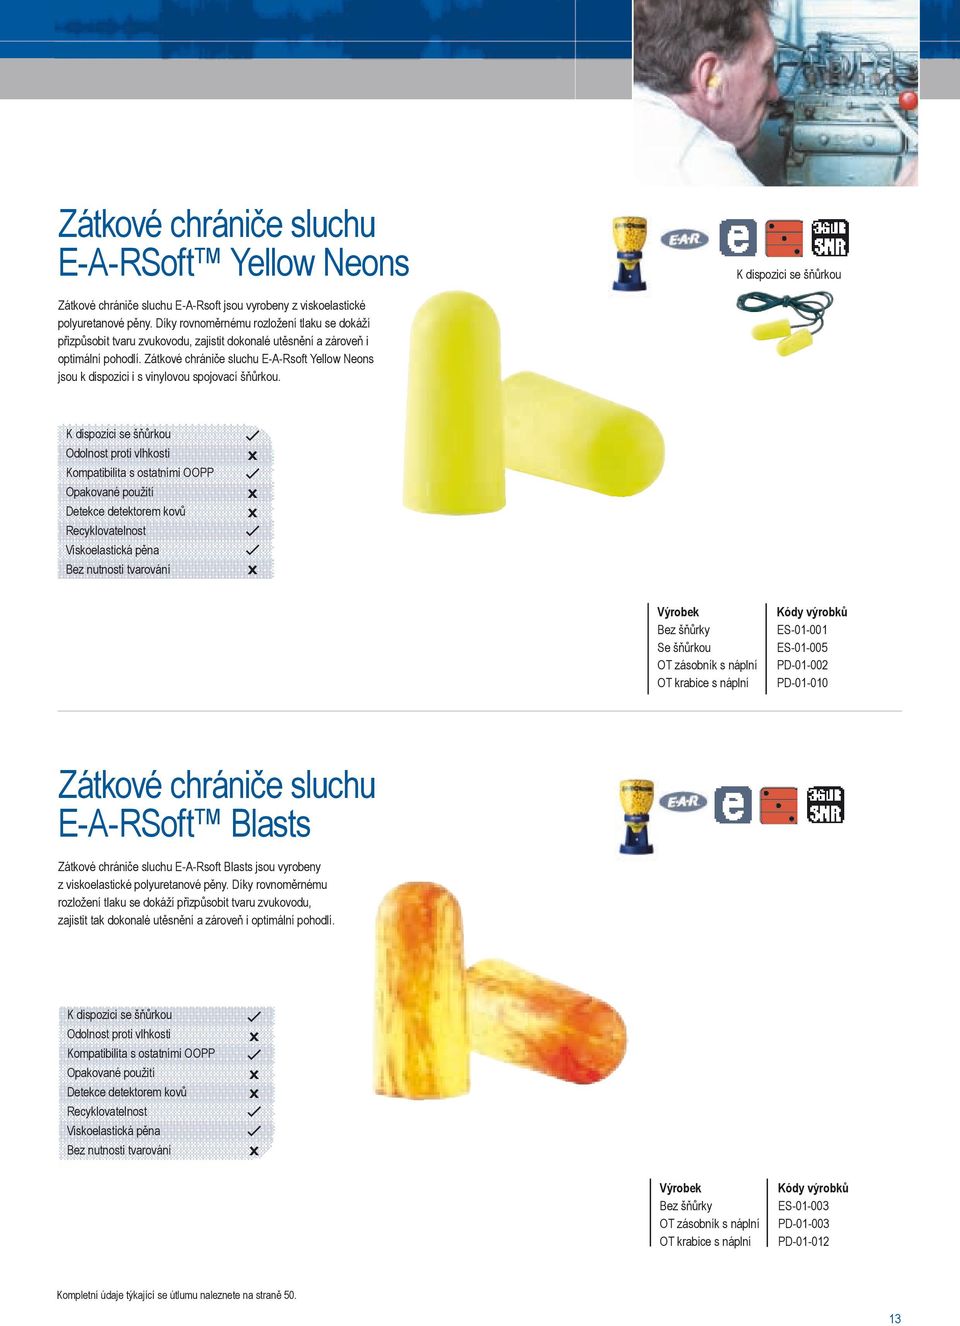 Zátkové chrániče sluchu E-A-Rsoft Yellow Neons jsou k dispozici i s vinylovou spojovací šňůrkou.